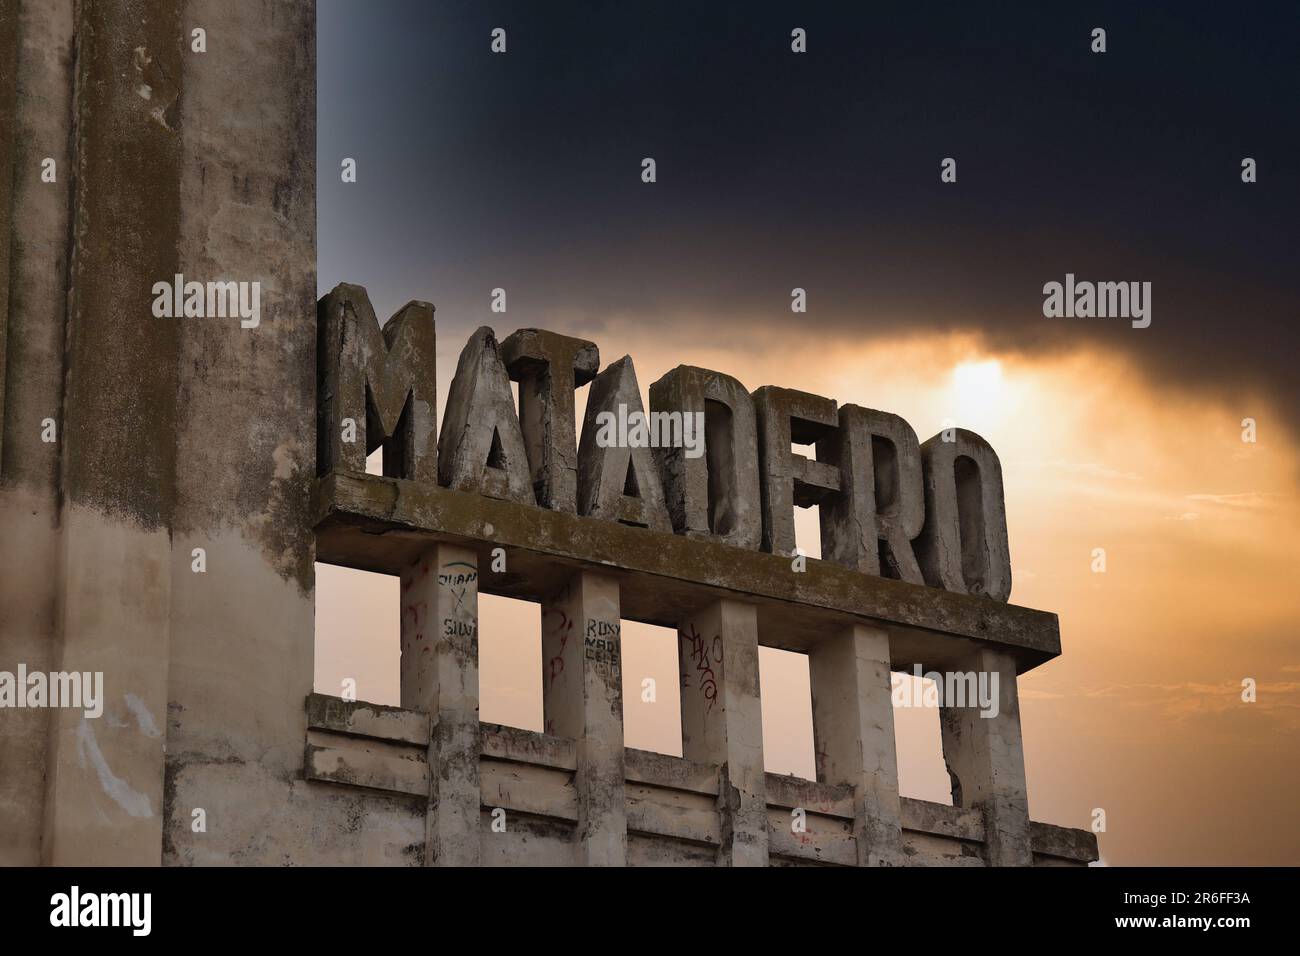 Ruinas del antiguo letrero con la palabra matadero en español del edificio inundado en Epecuen Foto de stock